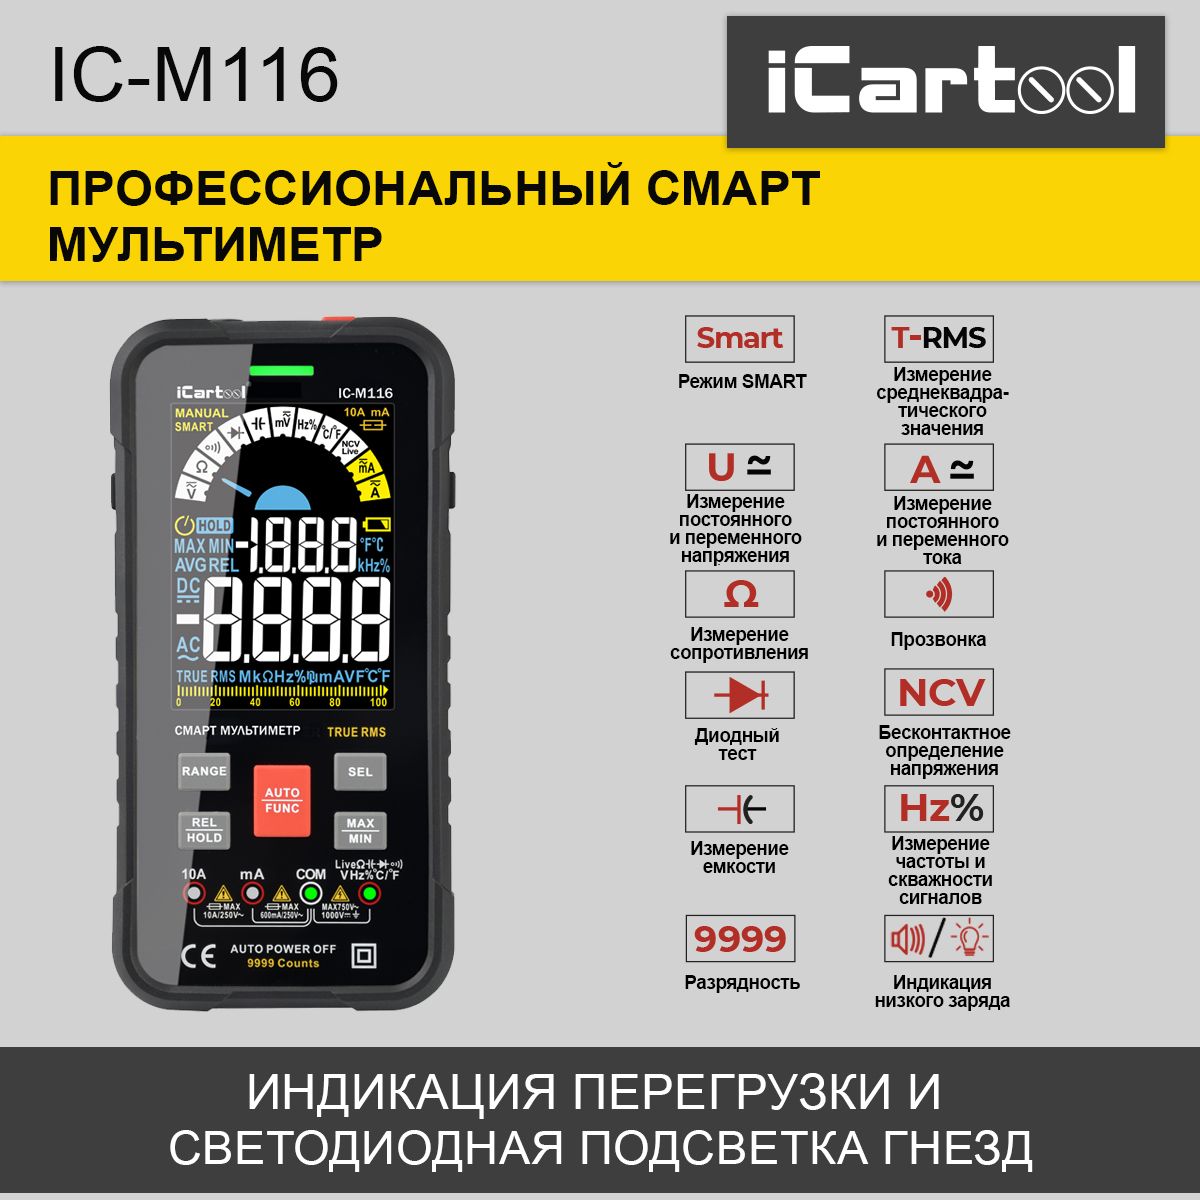 Профессиональный смарт мультиметр iCartool IC-M116 профессиональный смарт мультиметр icartool ic m116